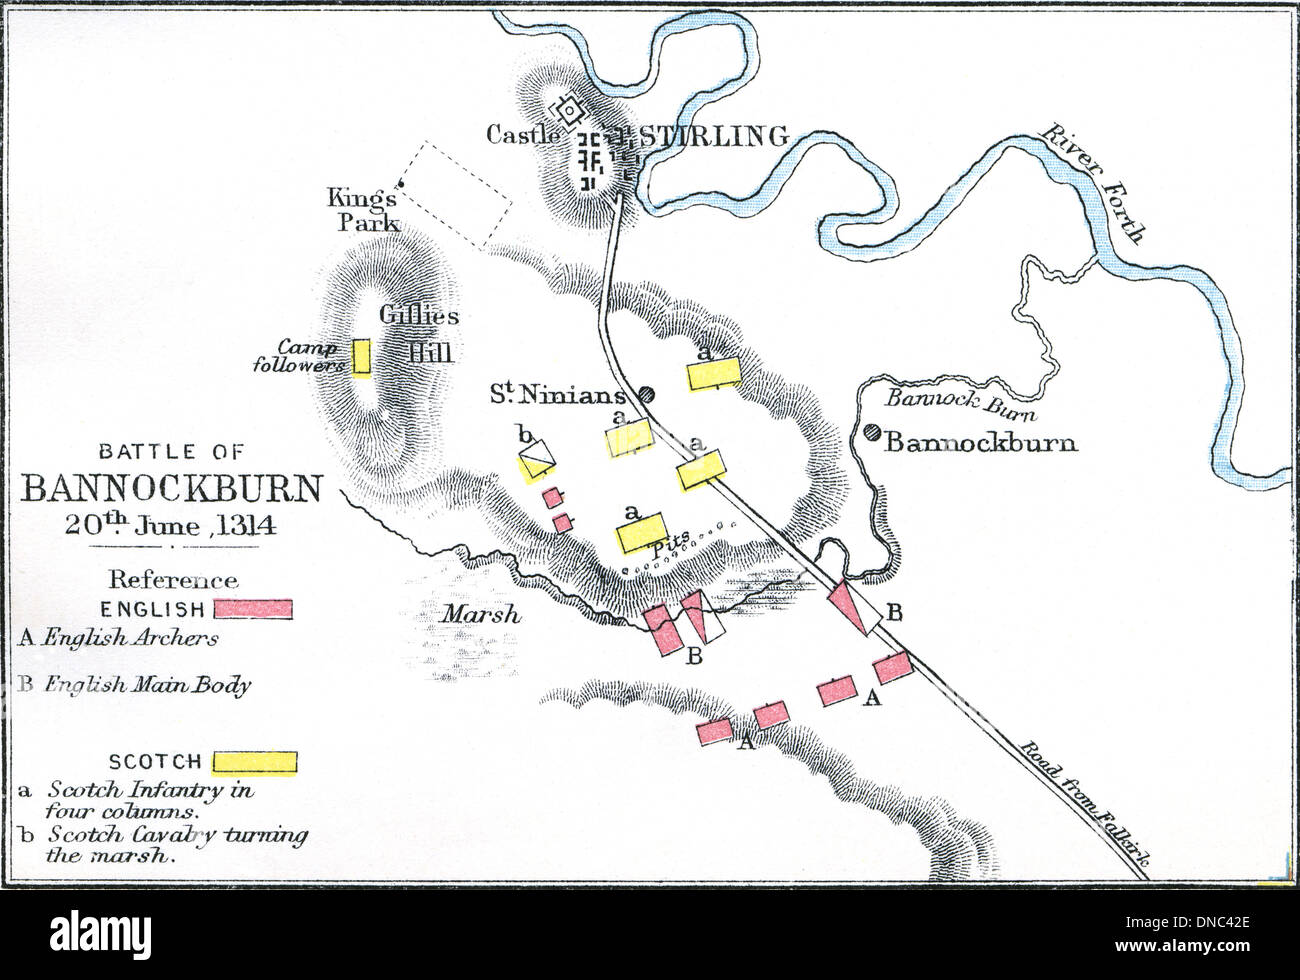 Schlacht von Bannockburn, 20. Juni 1314. Karte von Schlachtplan. 1899 veröffentlichte. Stockfoto